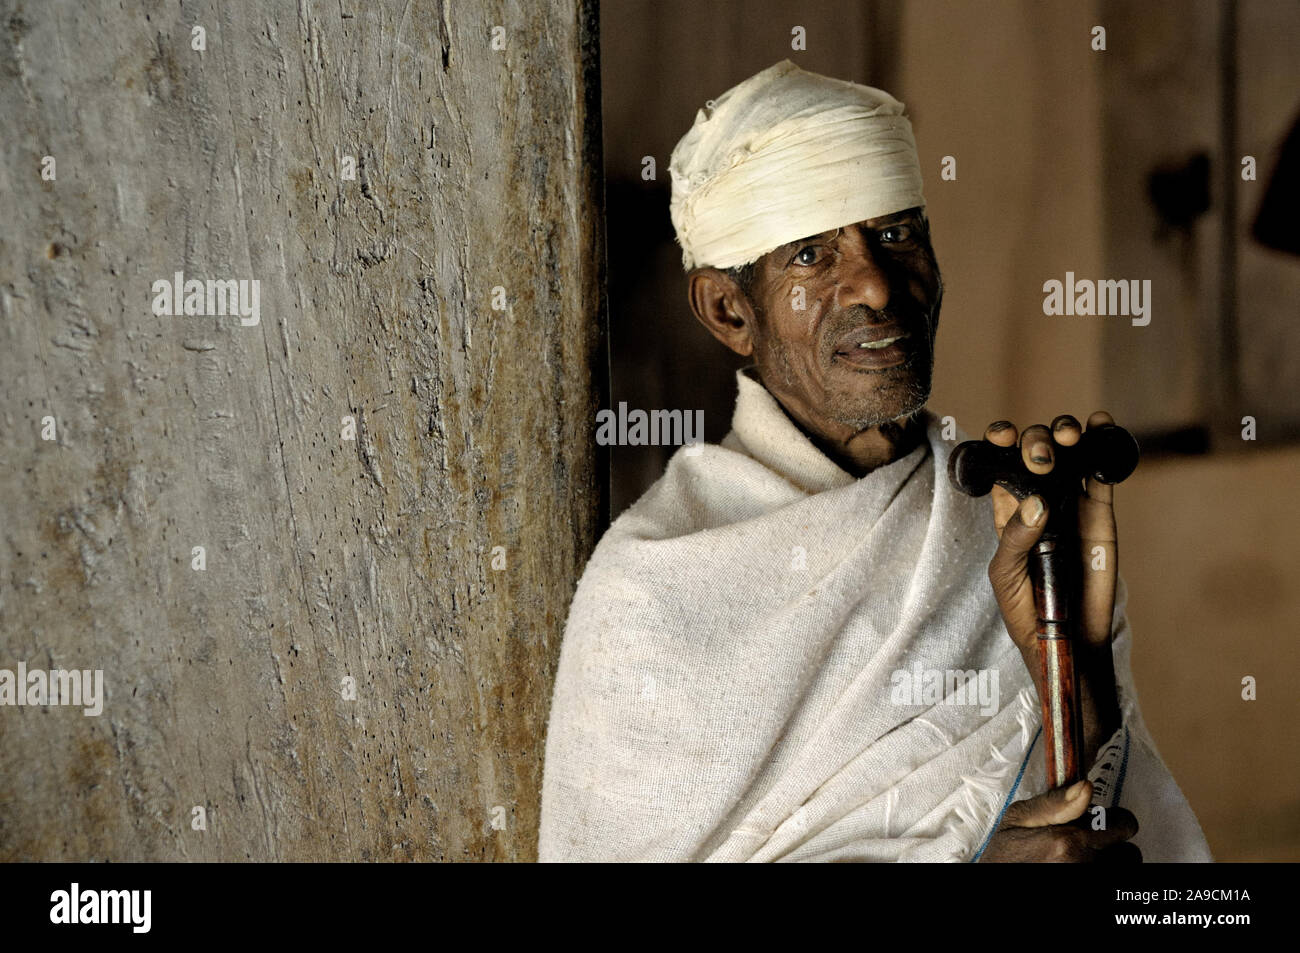 Priest with his prayer stick, Narga Selassie church, Lake Tana, Ethiopia Stock Photo